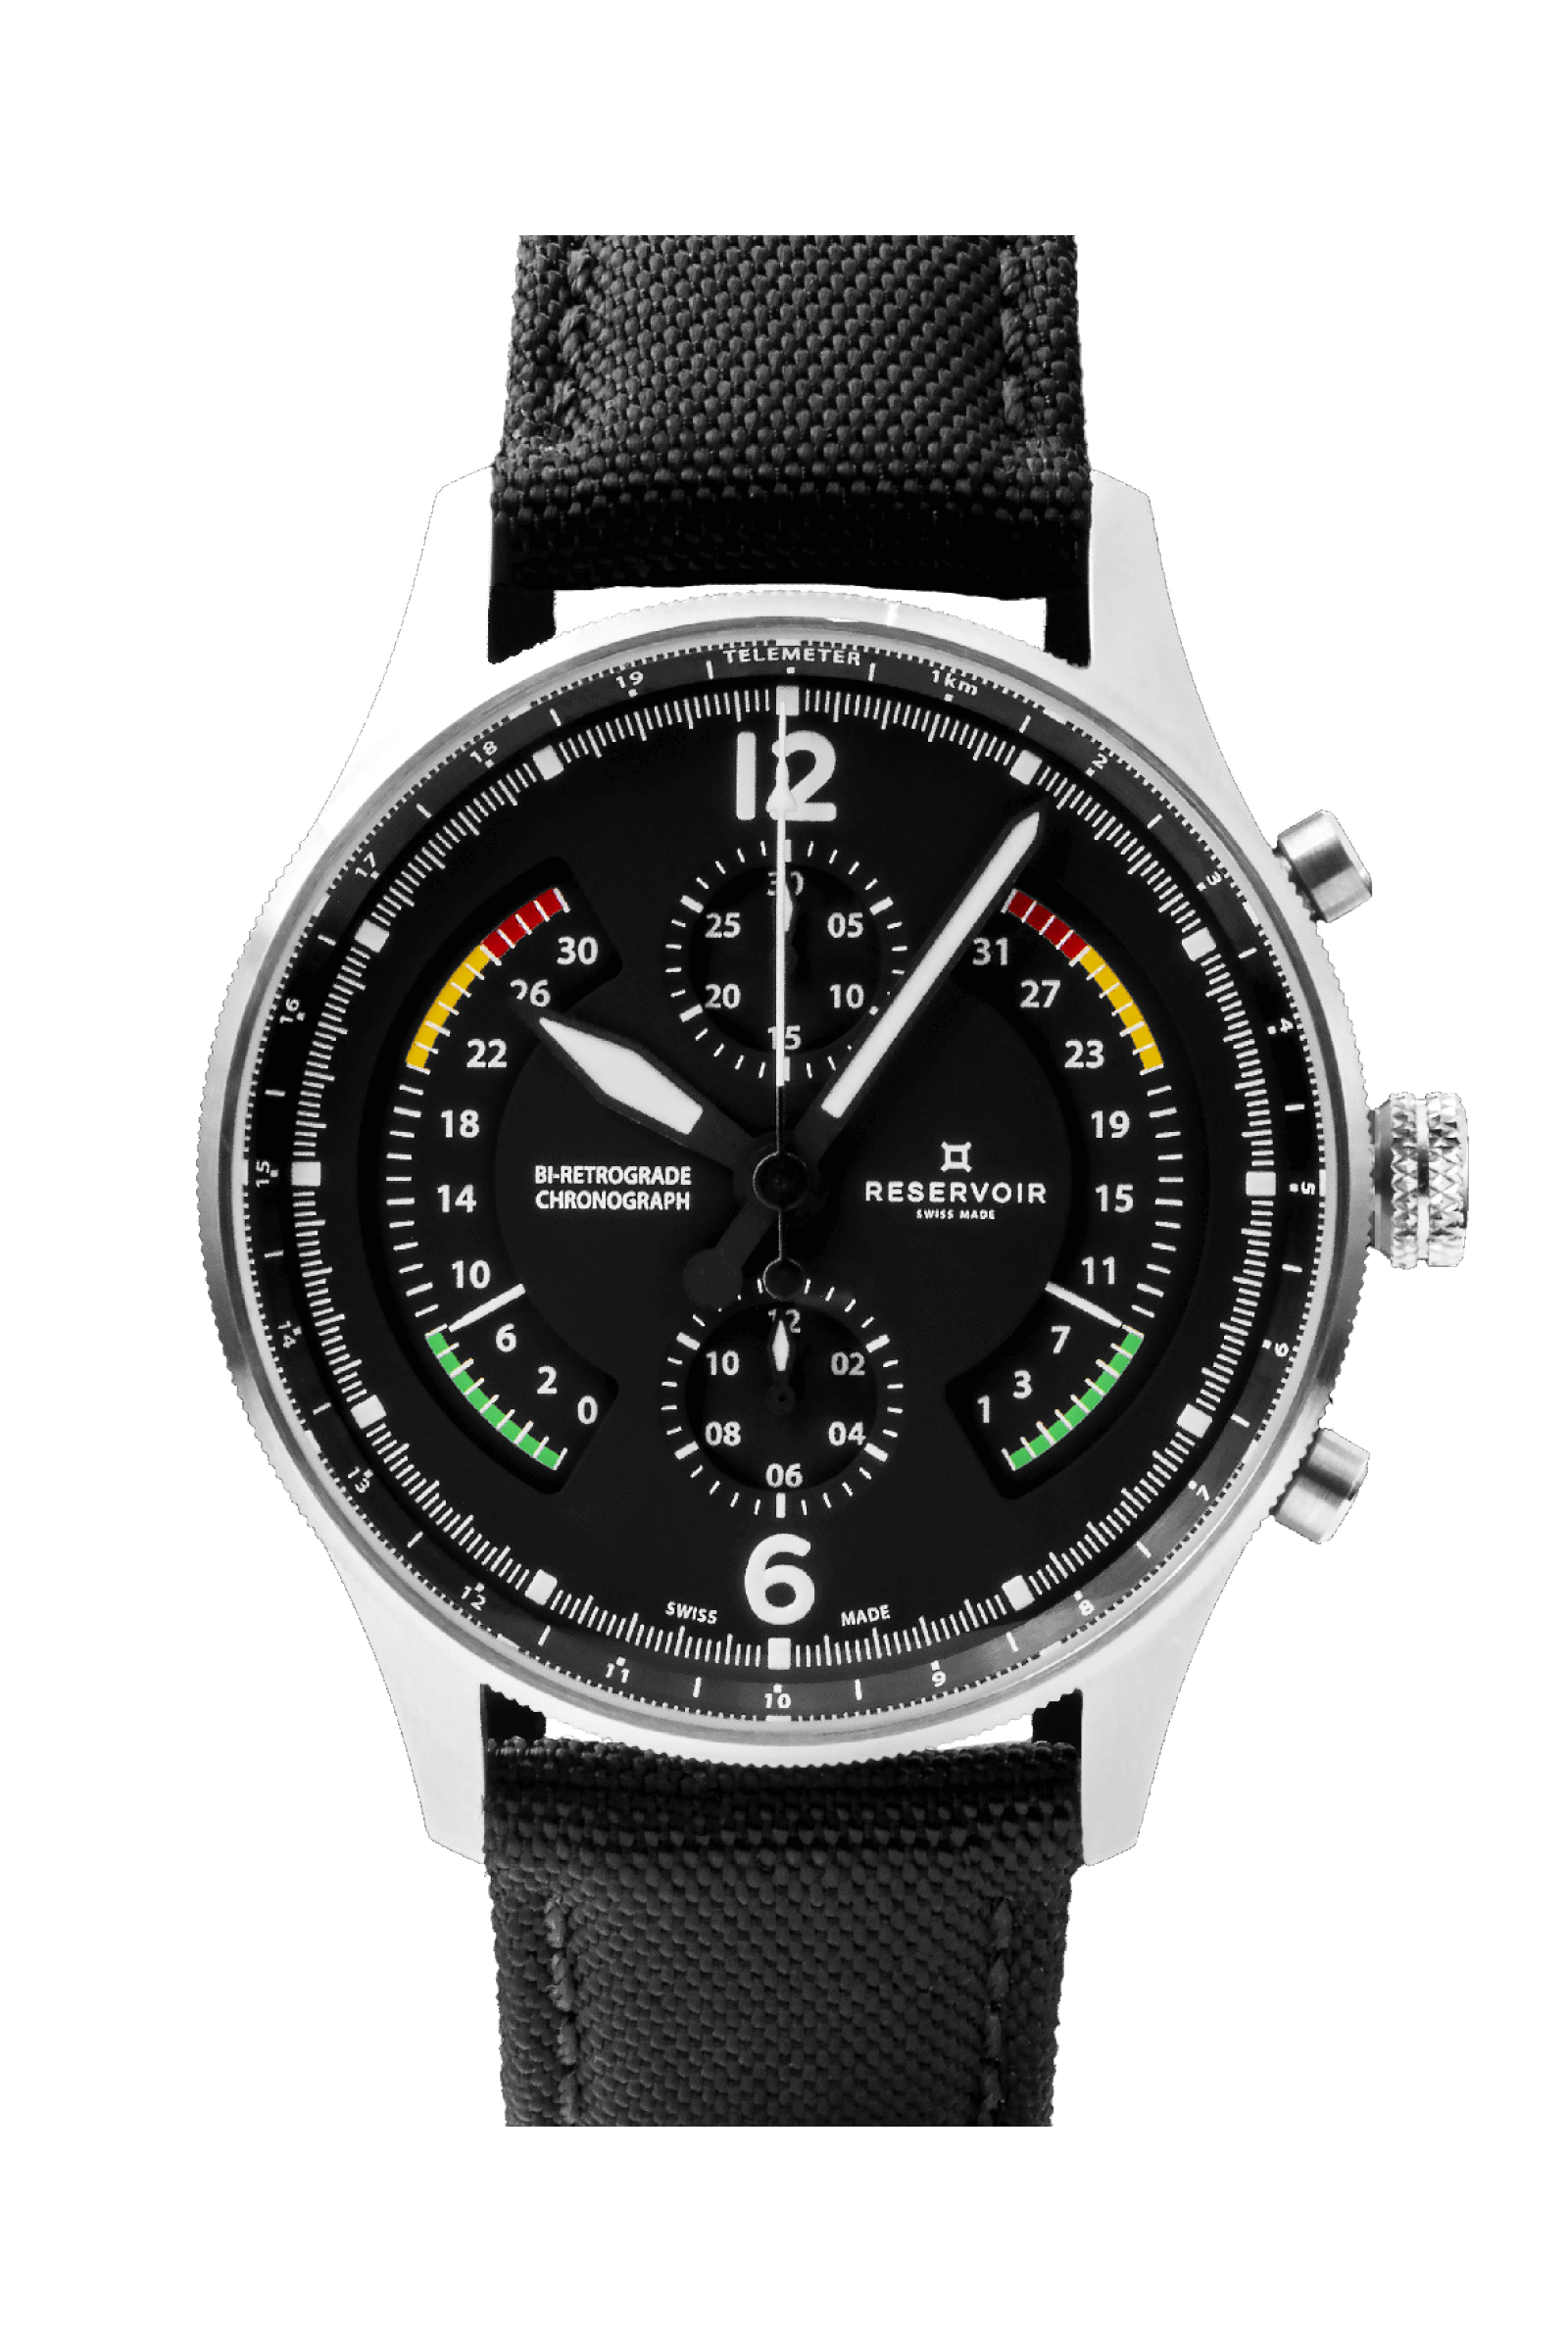 Pilote portant une montre chronographe airfight noire, gris clair et vert clair